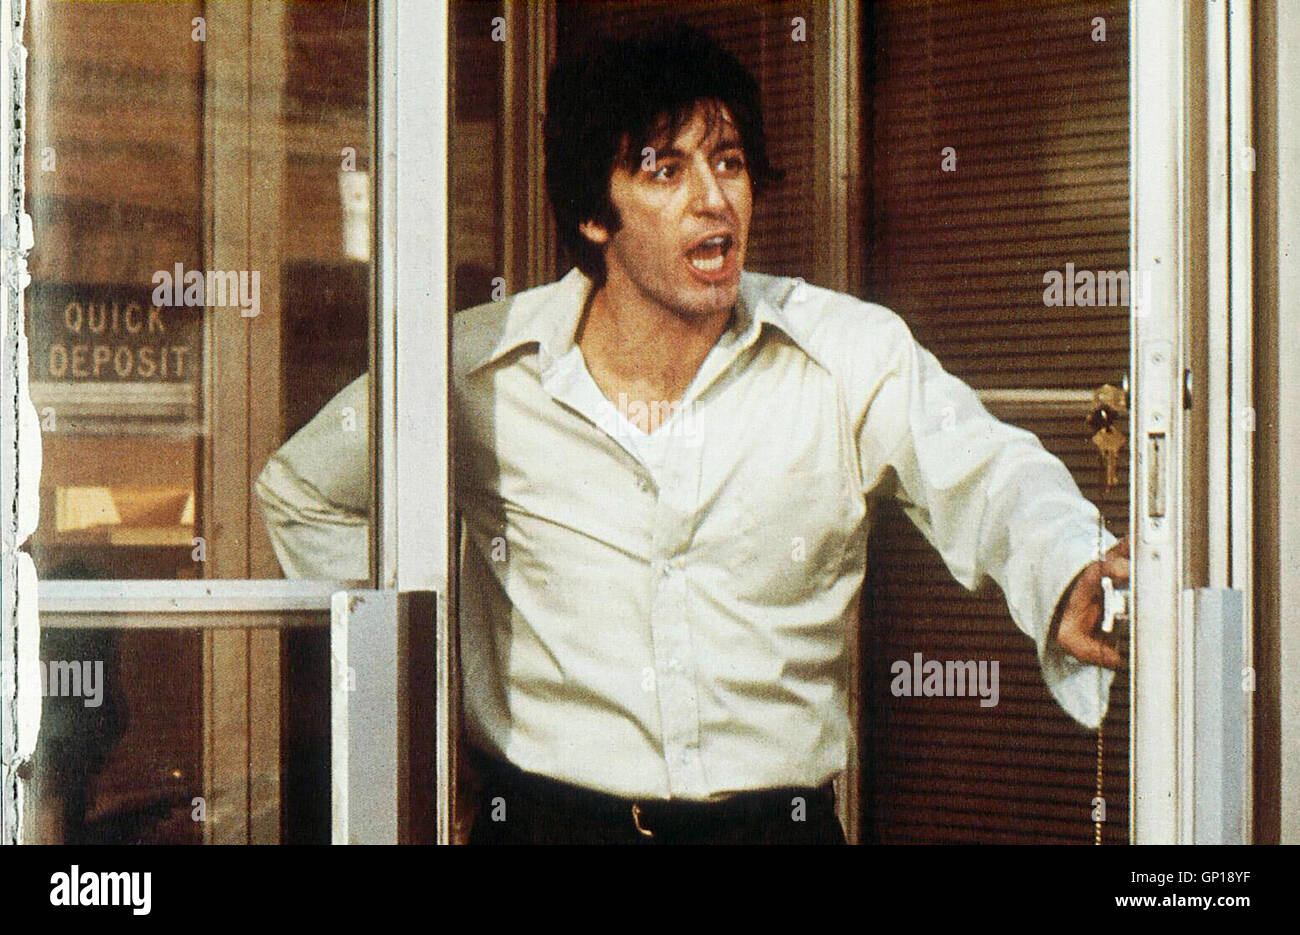 Al Pacino Der bisexuelle Sonny (Al Pacino) ueberfaellt eine Bank, um seinem Geliebten eine Geschlechtsumwandlung zu ermoeglichen. *** Caption locale *** 1975, Cane giorno pomeriggio, Hundstage Foto Stock